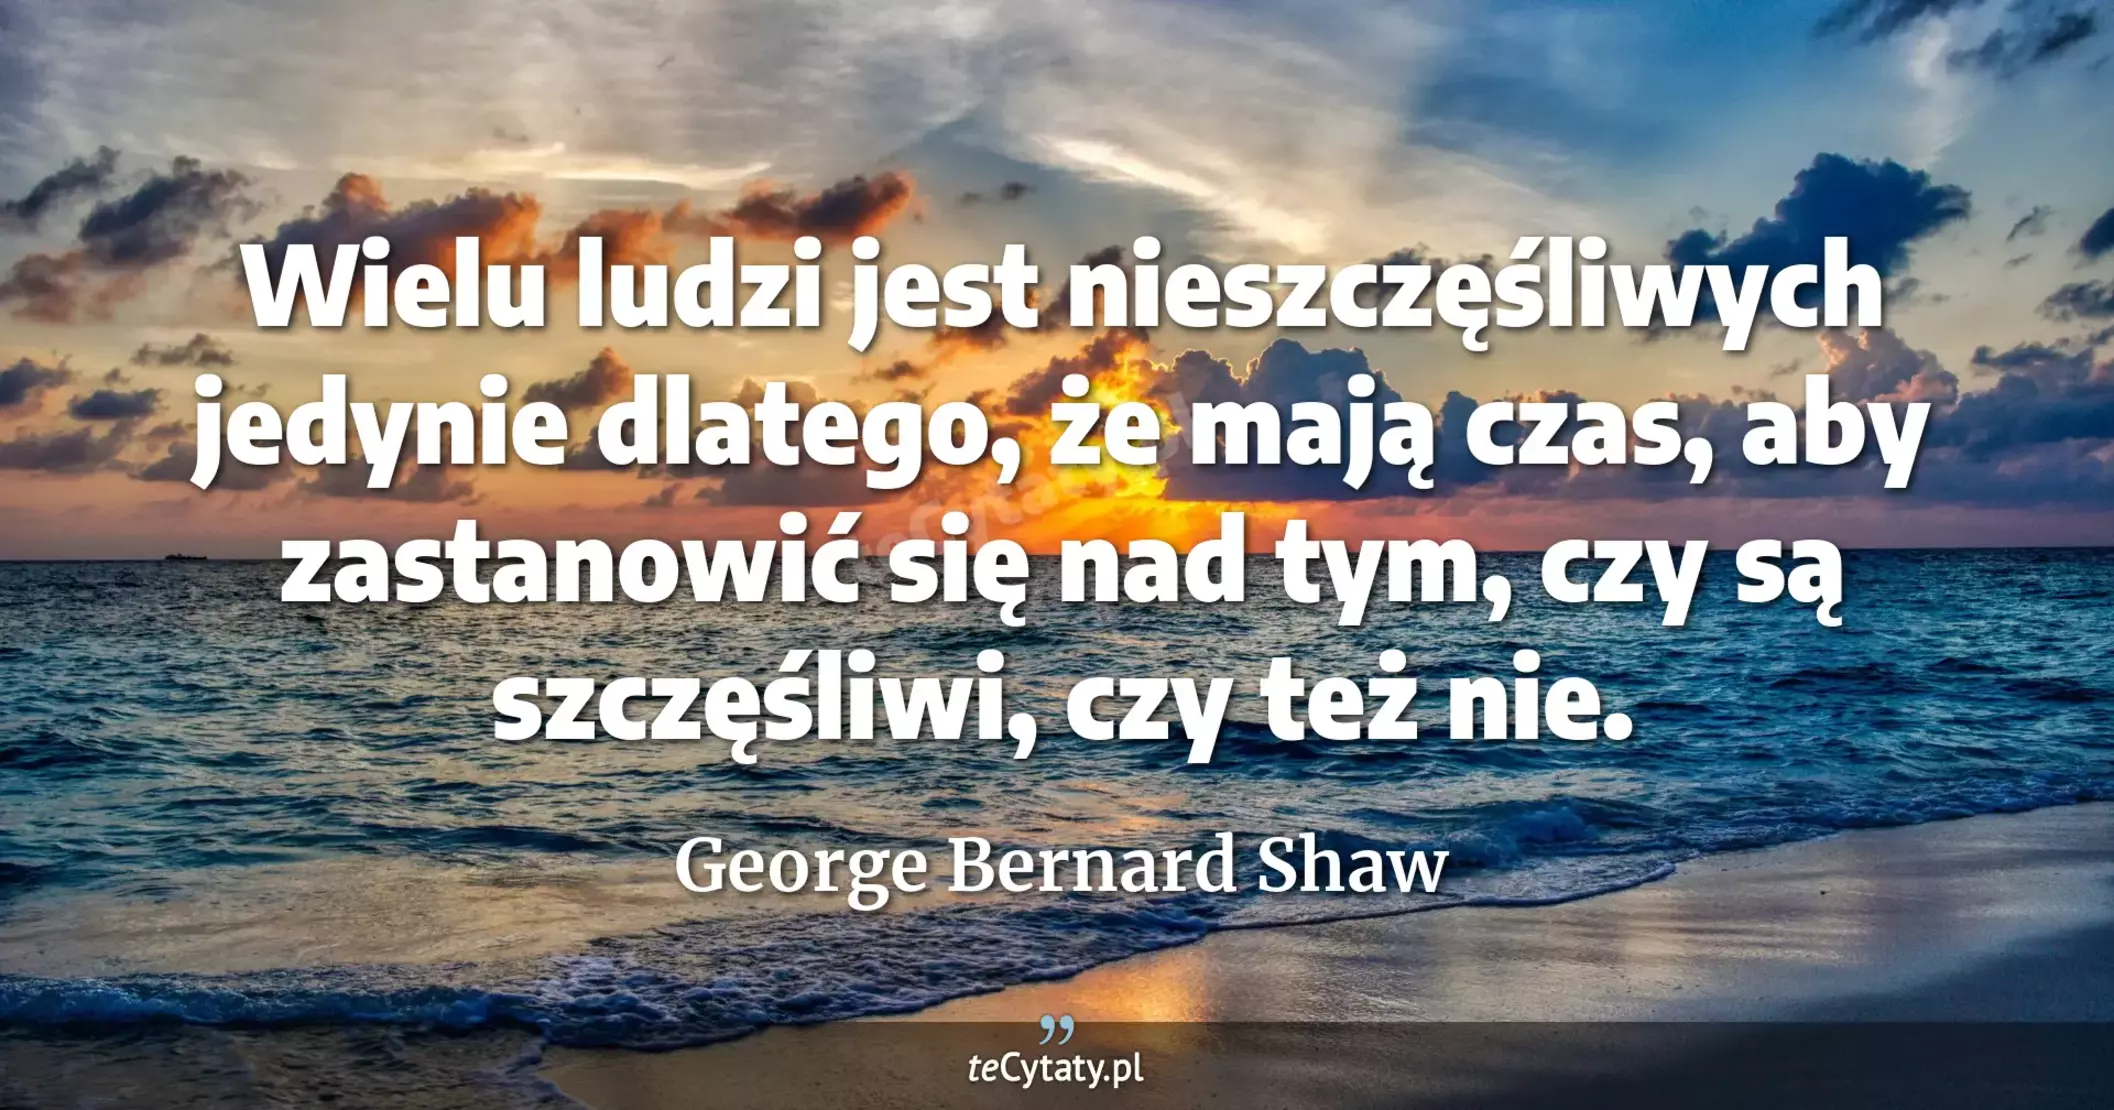 Wielu ludzi jest nieszczęśliwych jedynie dlatego, że mają czas, aby zastanowić się nad tym, czy są szczęśliwi, czy też nie. - George Bernard Shaw